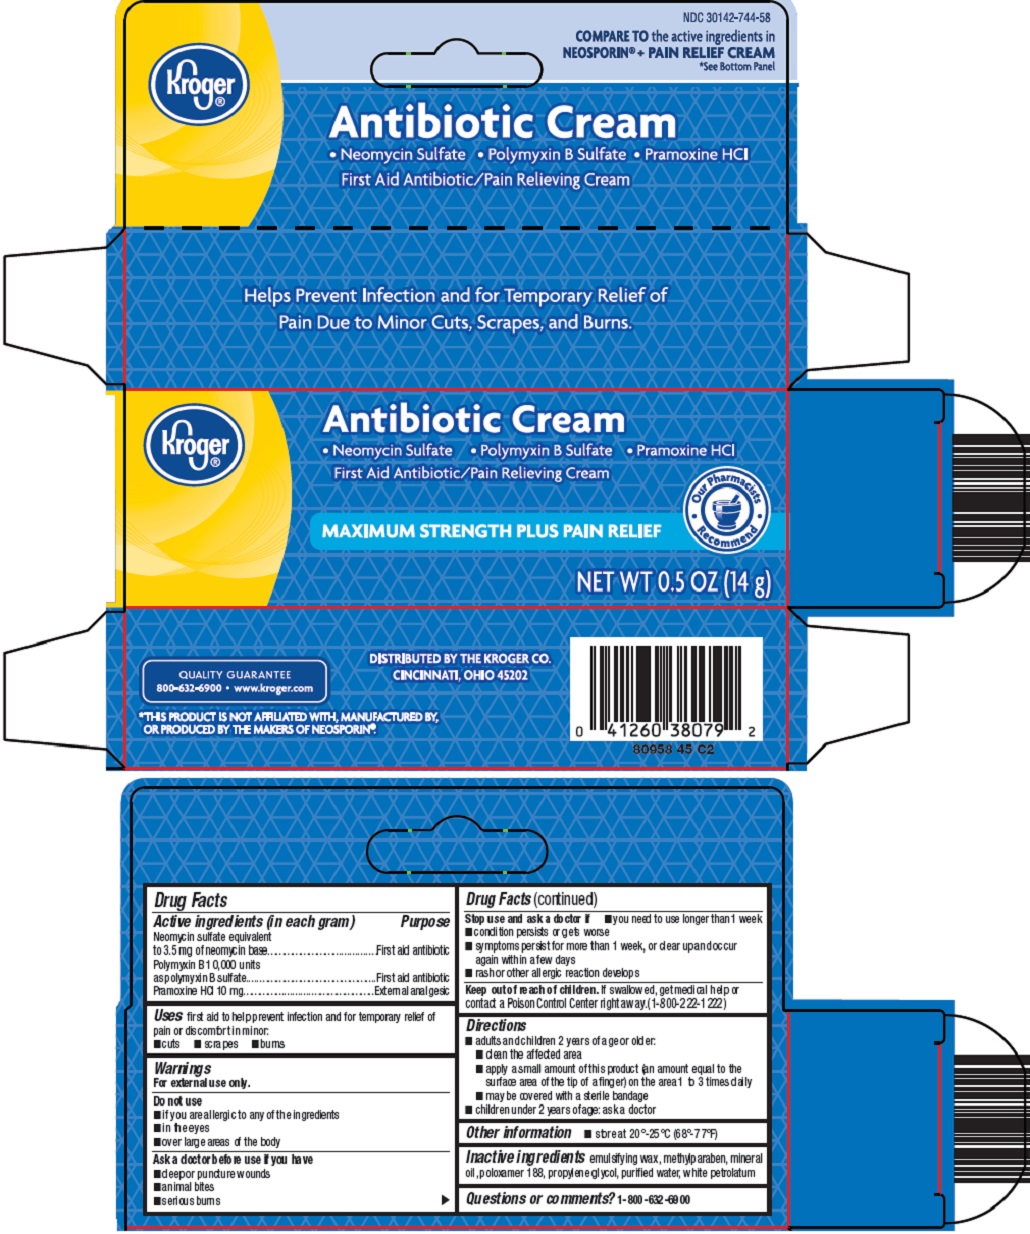 antibiotic cream image